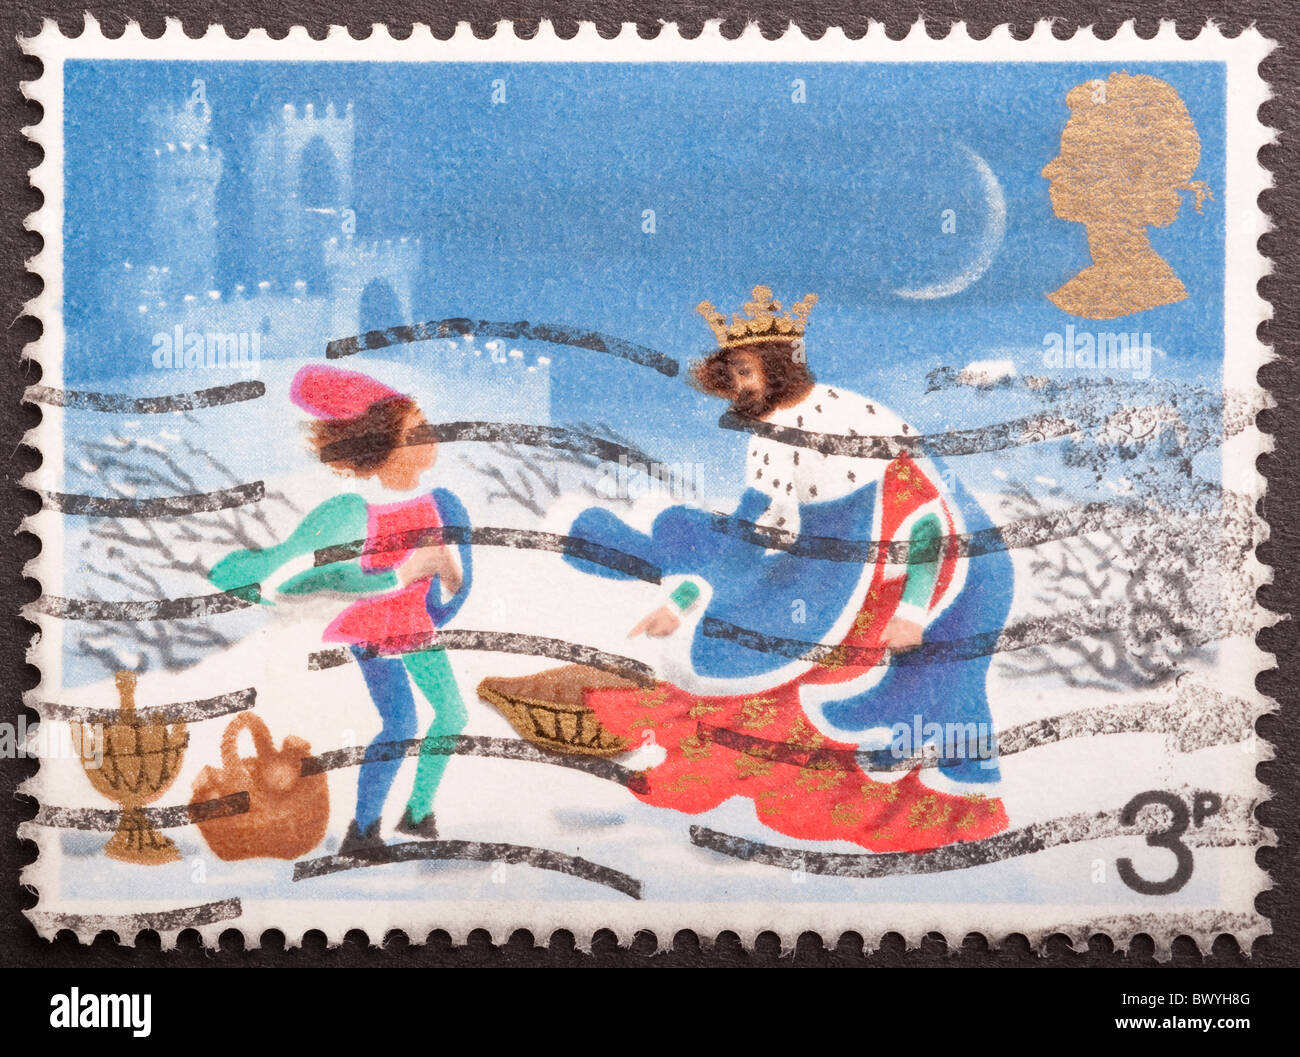 Royaume Uni timbre poste 3d, 1973 Question Banque D'Images